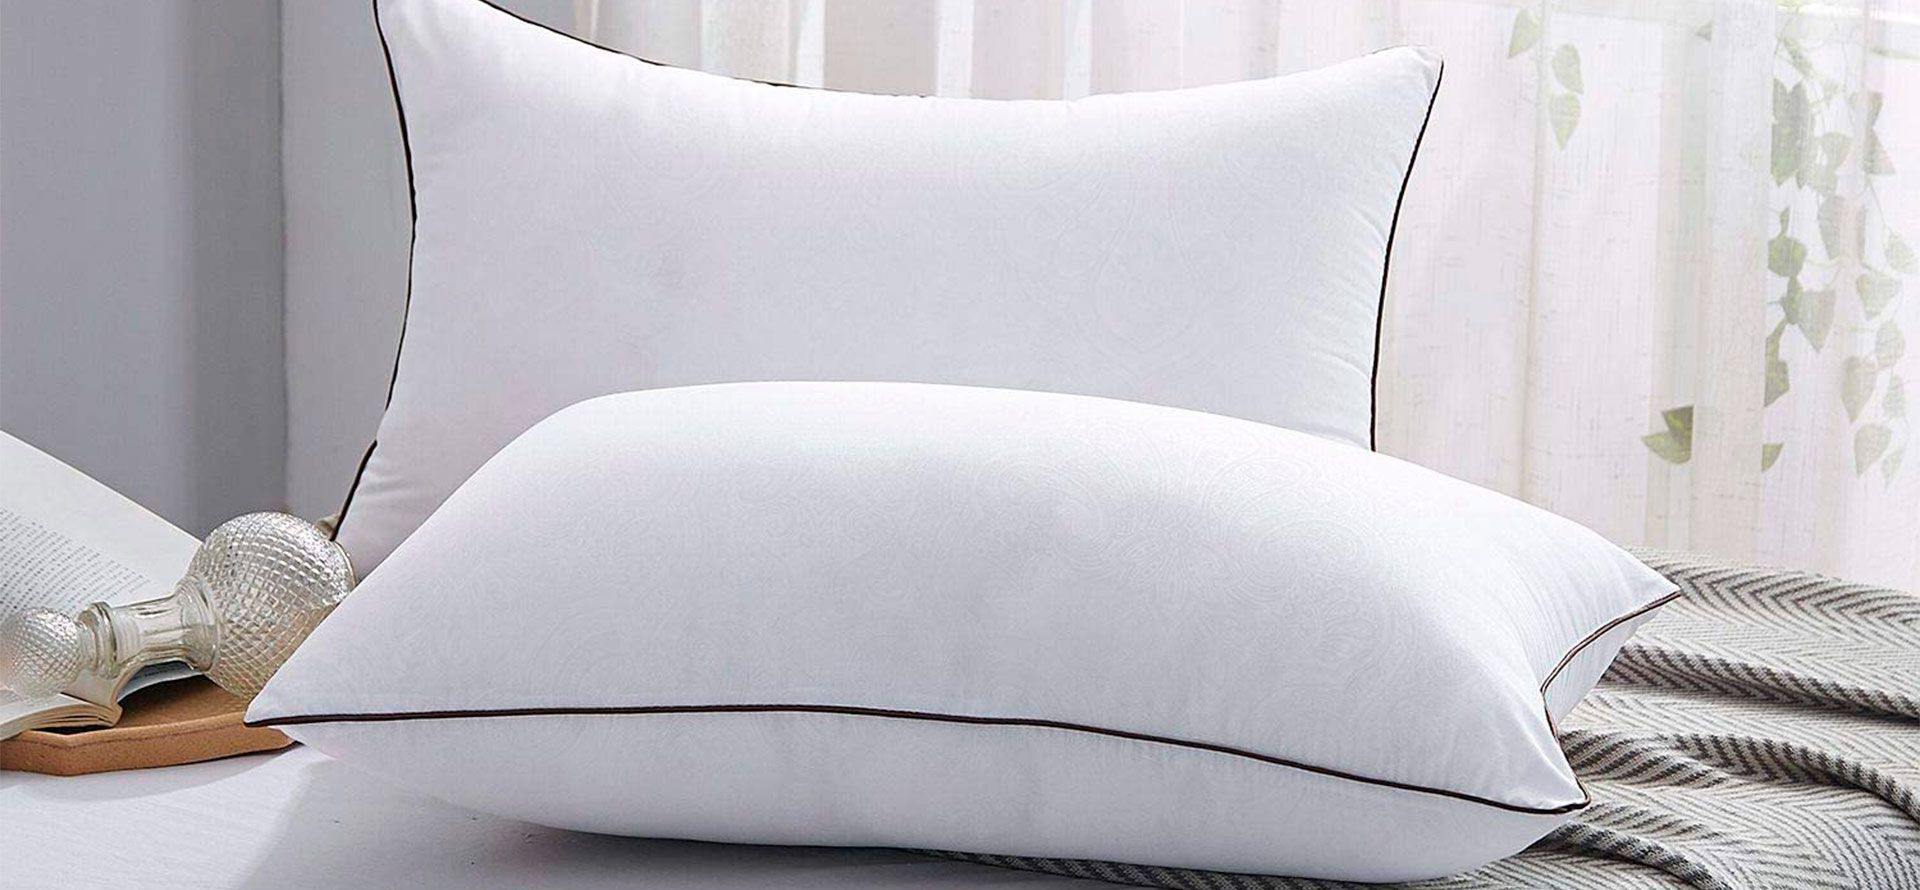 Luxury King size pillows.